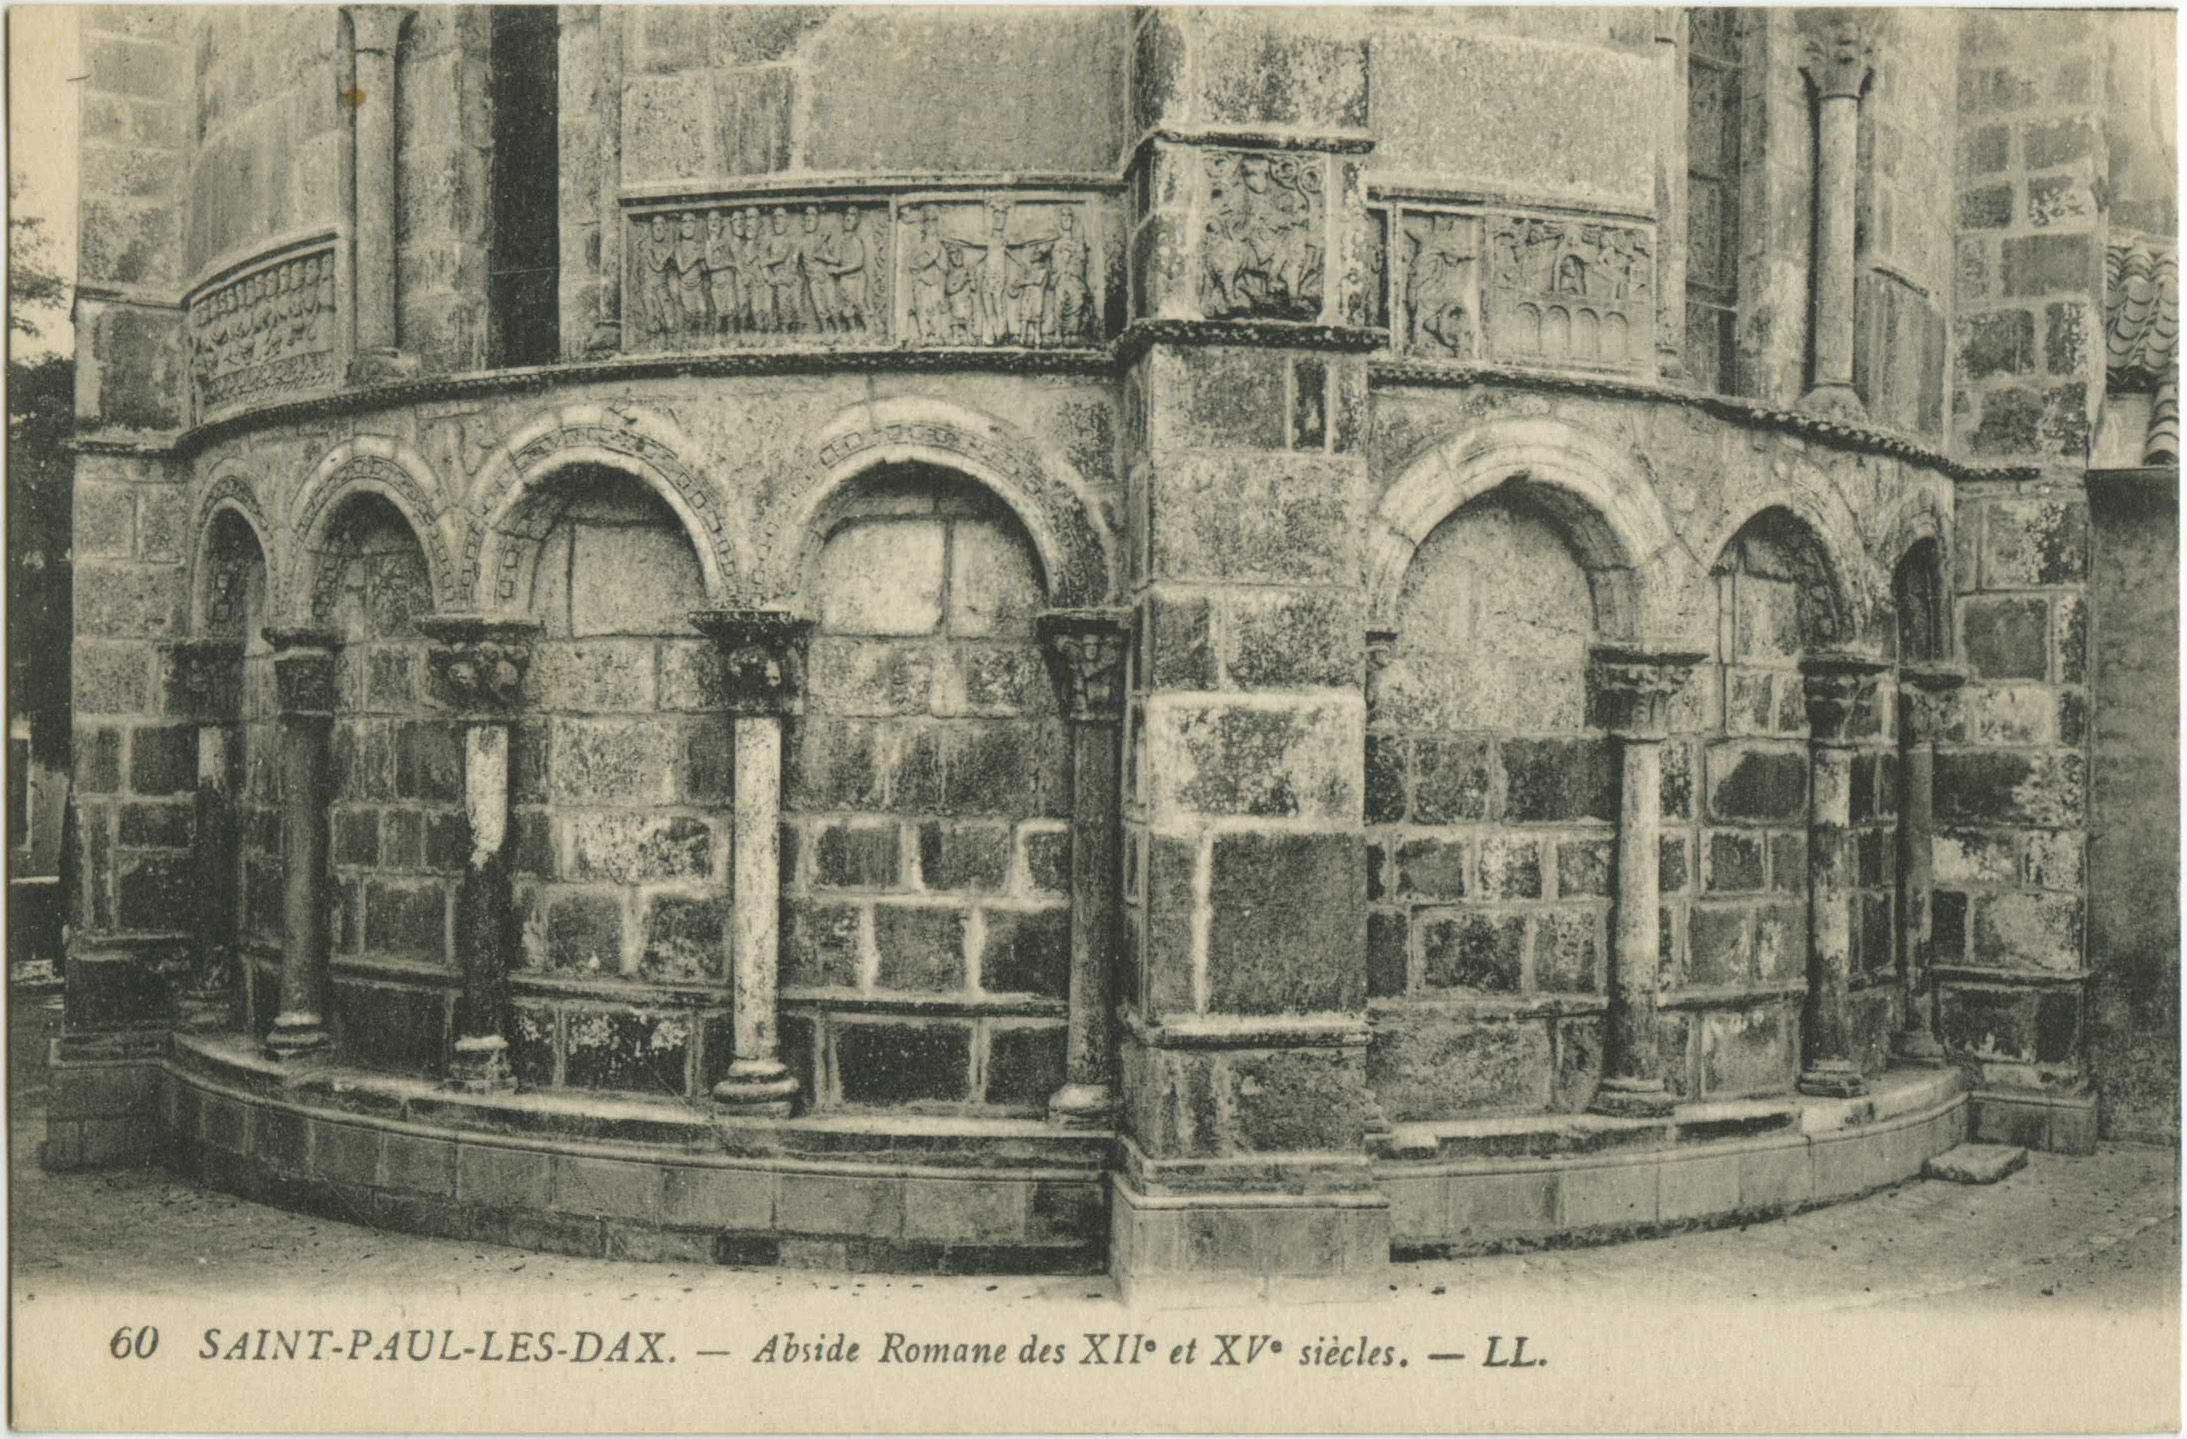 Saint-Paul-lès-Dax - Abside Romane des XII<sup>e</sup> et XV<sup>e</sup> siècles